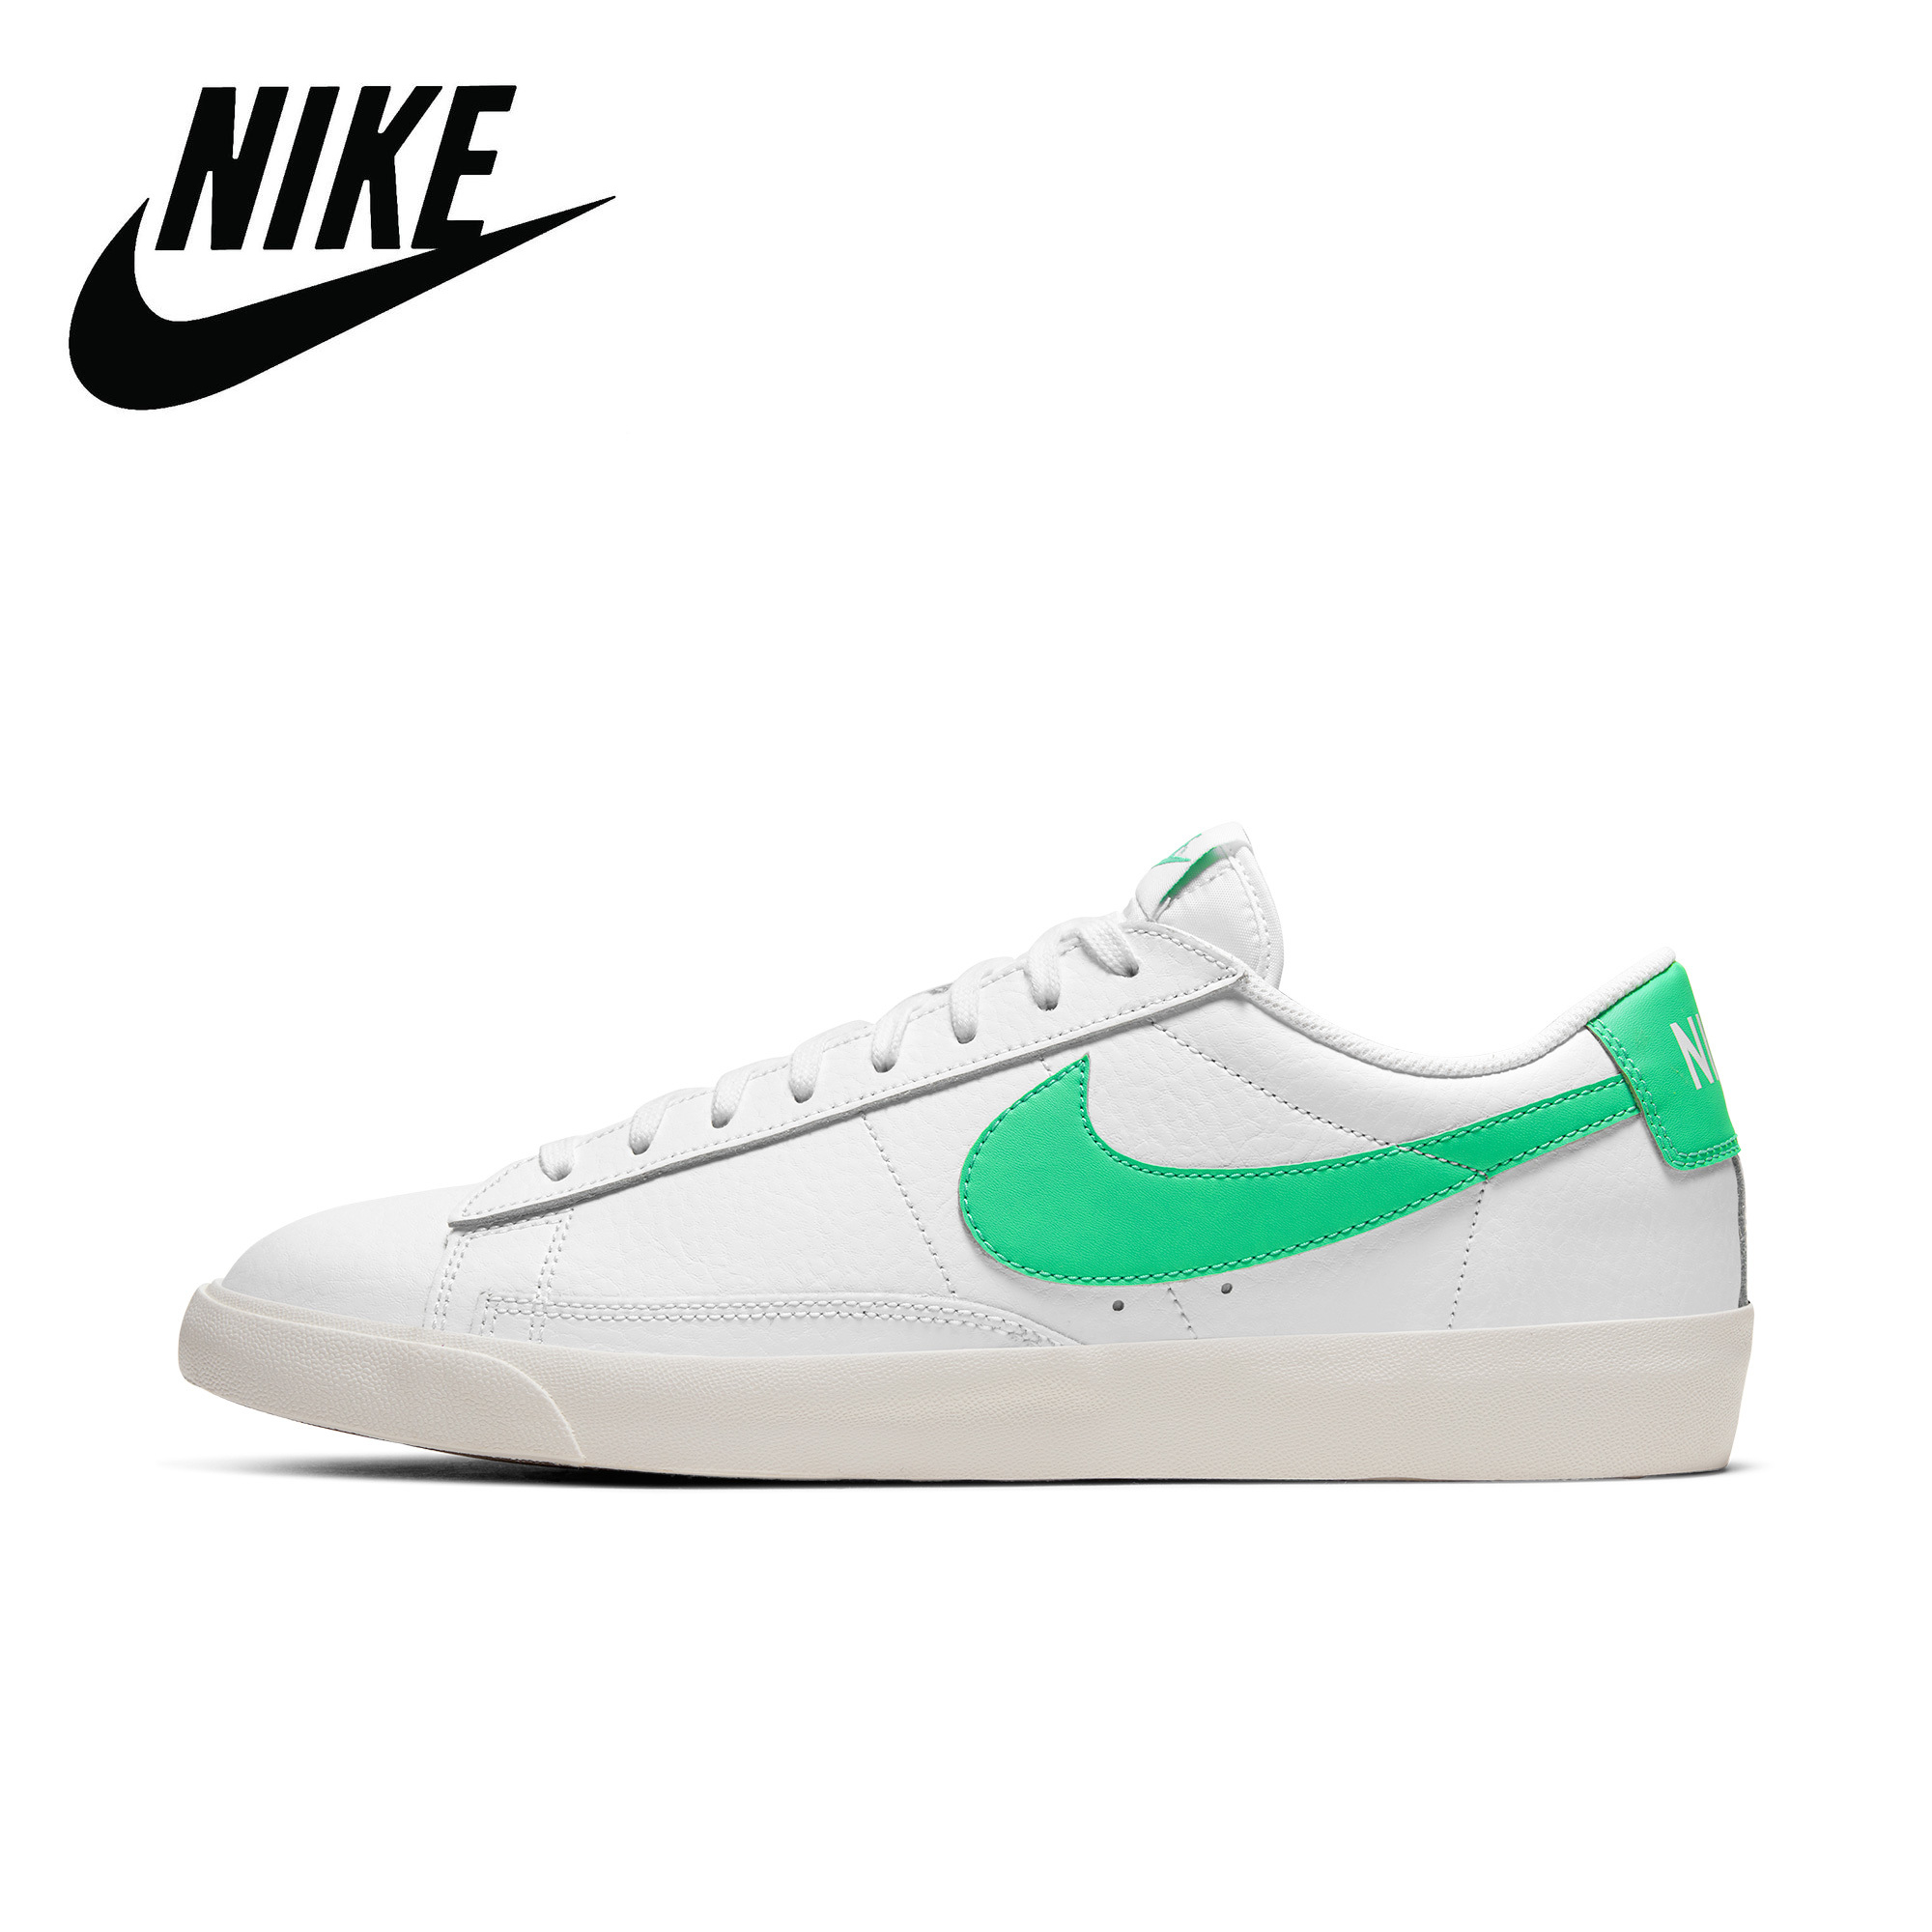 Nike shoes Blazer Low รองเท้าวิ่งผู้หญิงรองเท้าวิ่งผู้ชายรองเท้ากีฬารองเท้าลำลองสีขาว(สินค้ามาพร้อมกล่องจัดส่งโดย Kreey)